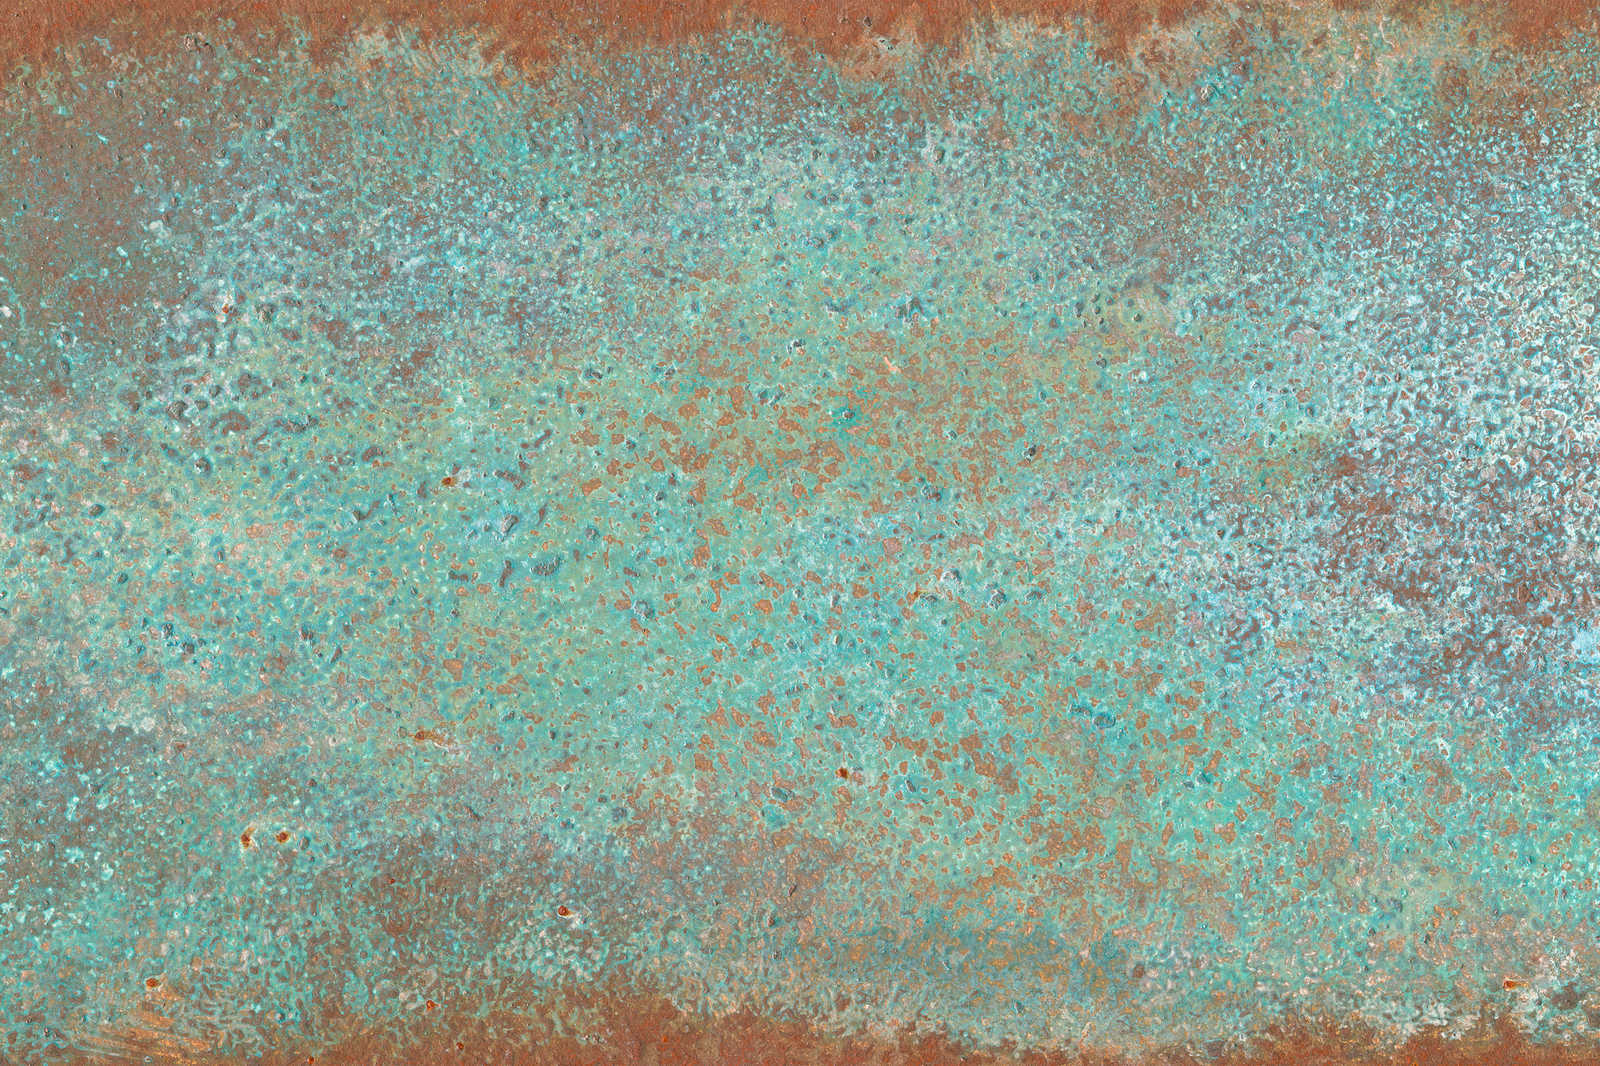             Toile aspect métal patine turquoise avec rouille - 1,20 m x 0,80 m
        